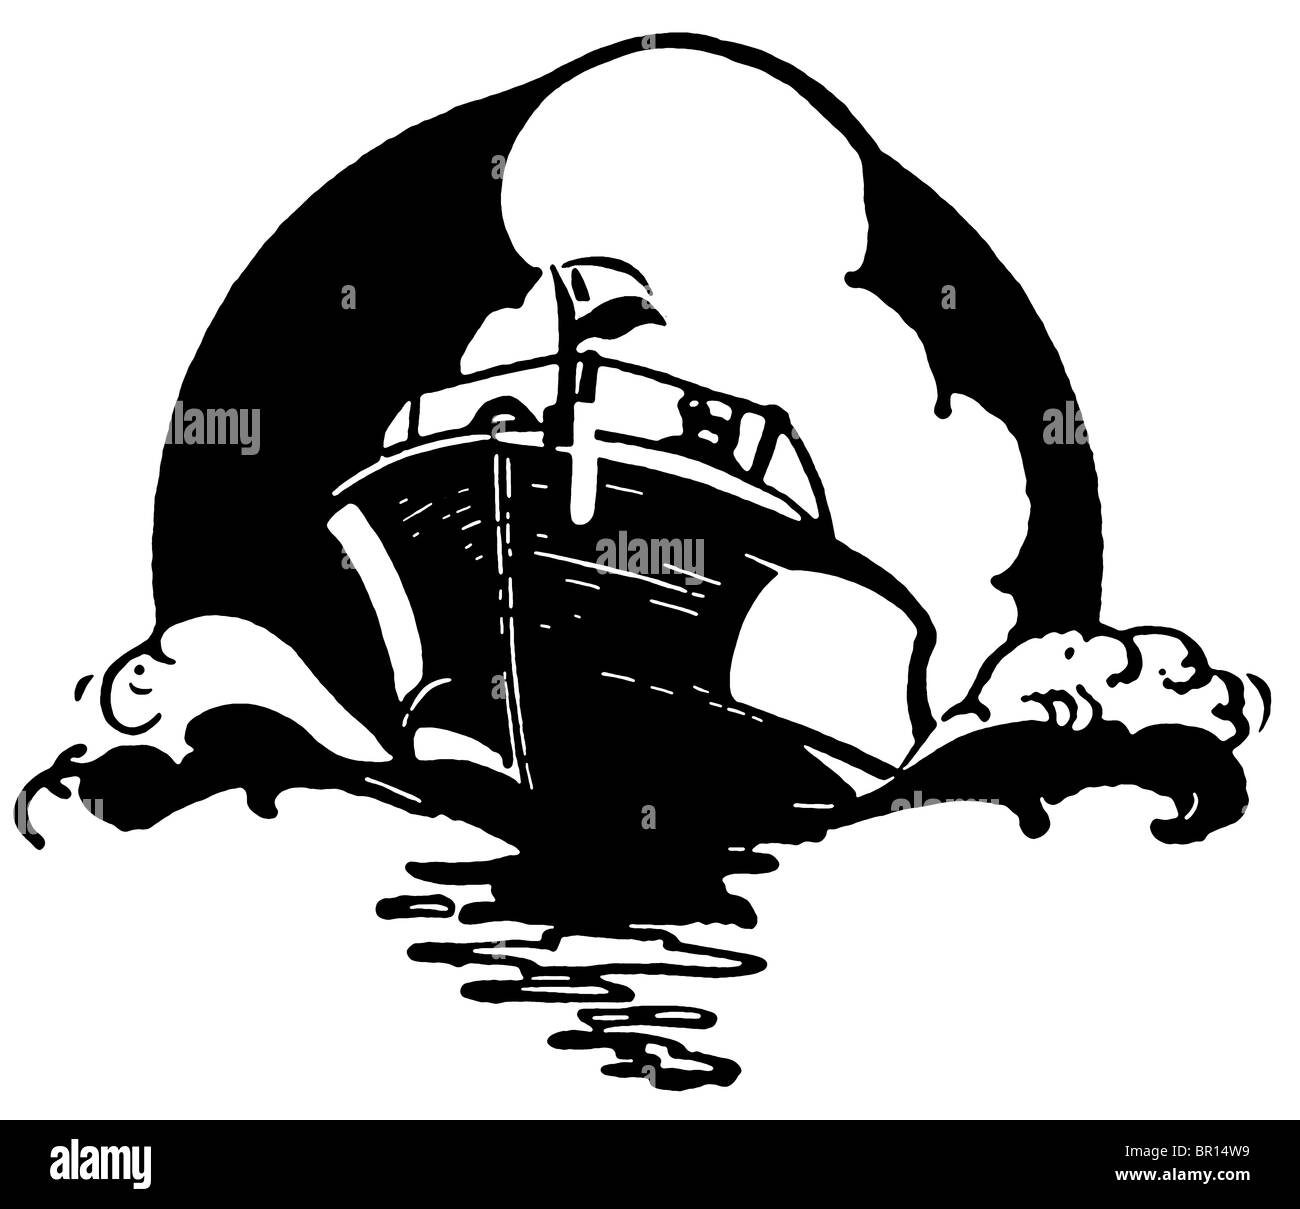 Une version noir et blanc d'une illustration d'un bateau vintage Banque D'Images